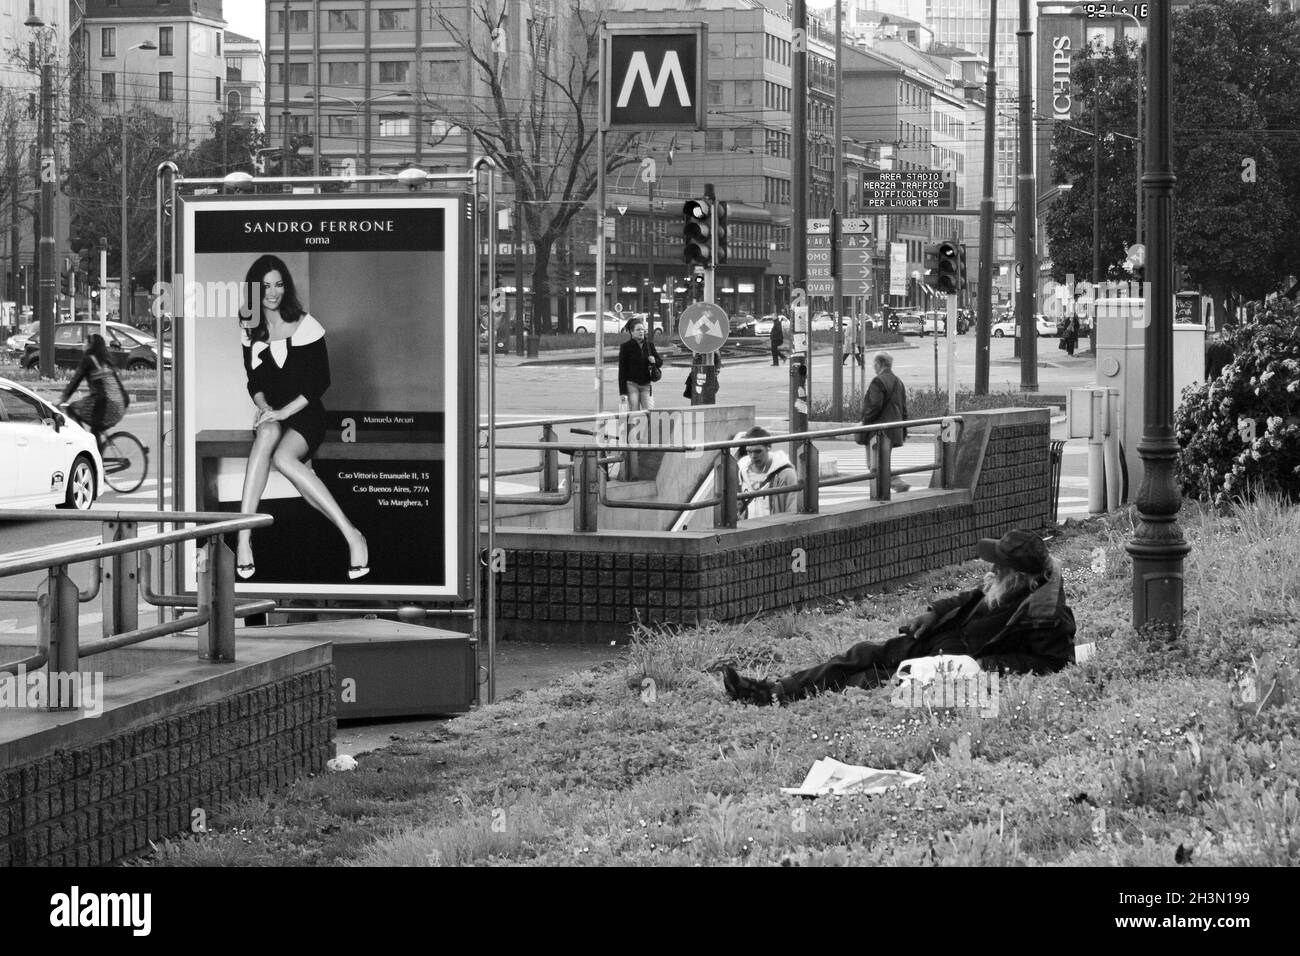 Milano, Italia; 23 marzo 2011: Senzatetto giacente accanto ad una pubblicità di beni di lusso. Foto Stock